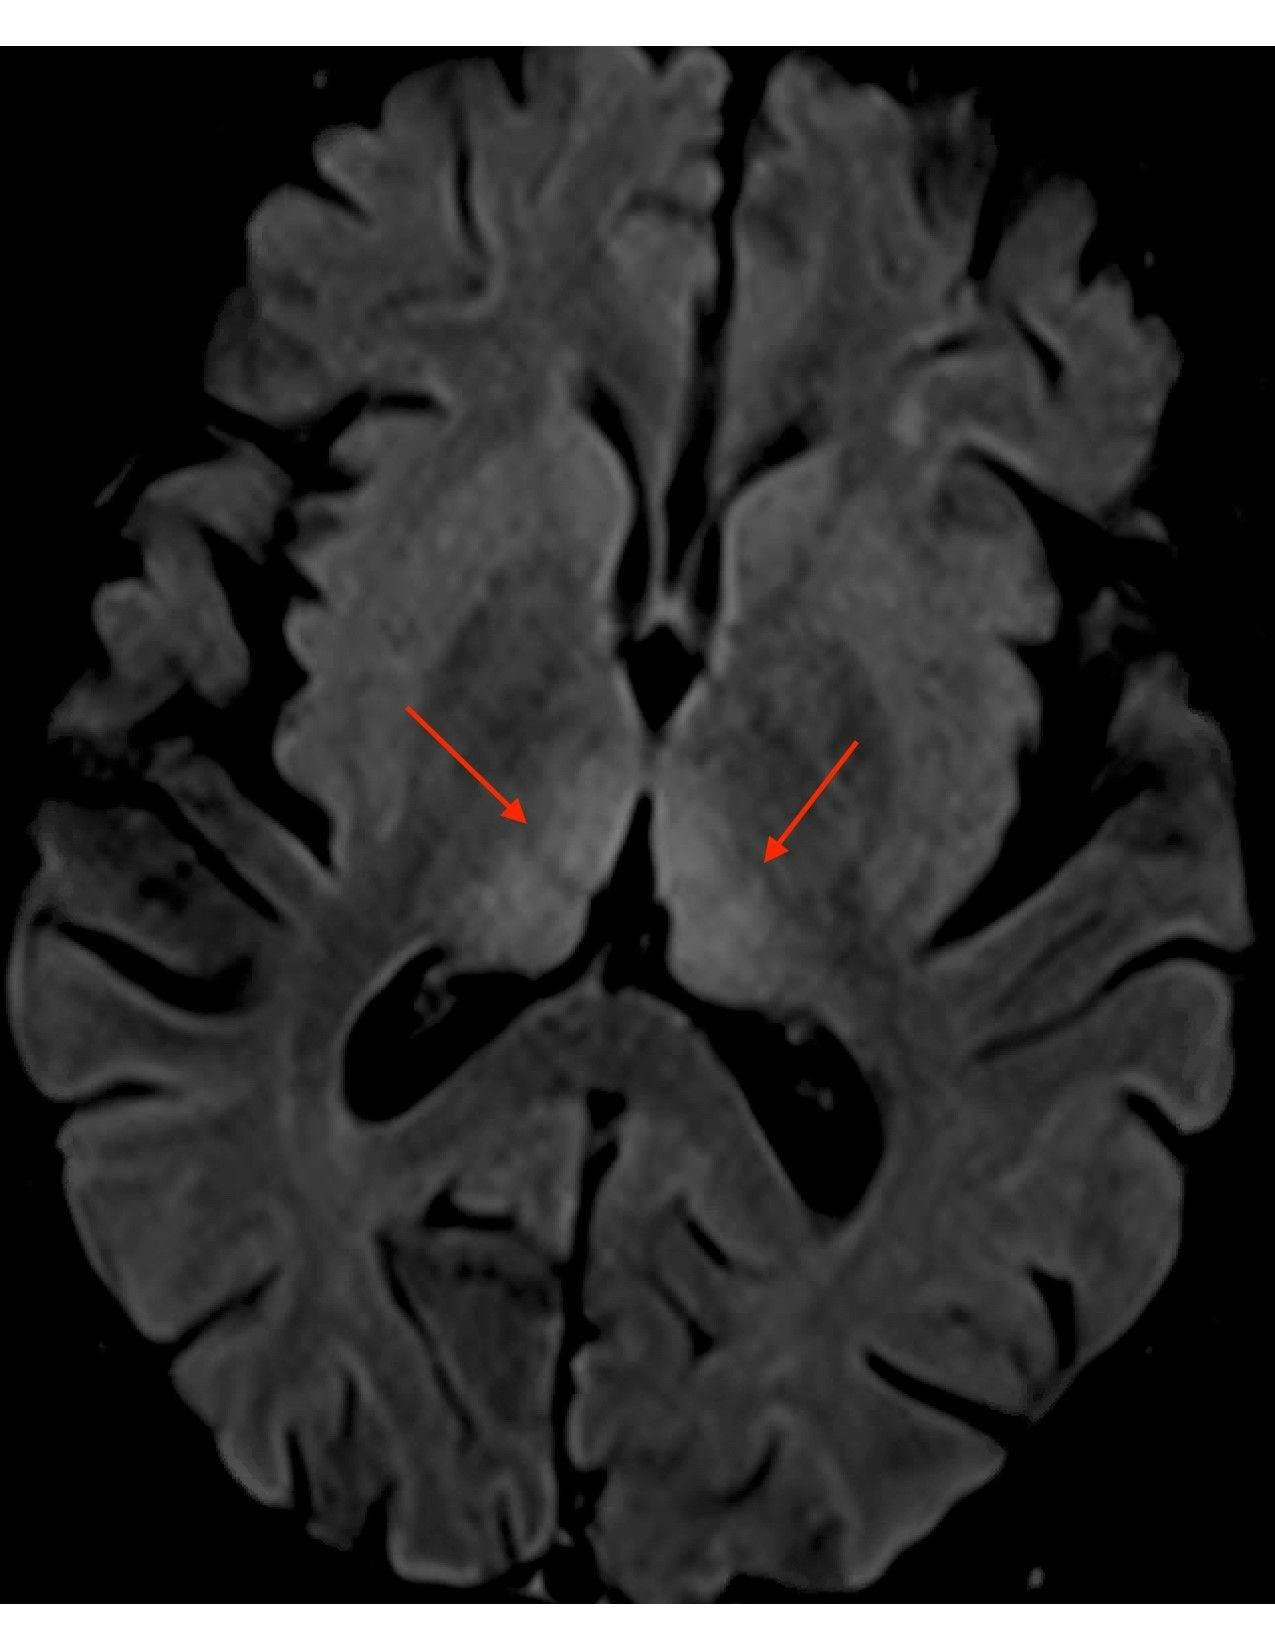 MRI brain scan axial FLAIR periaqueductal gray matter